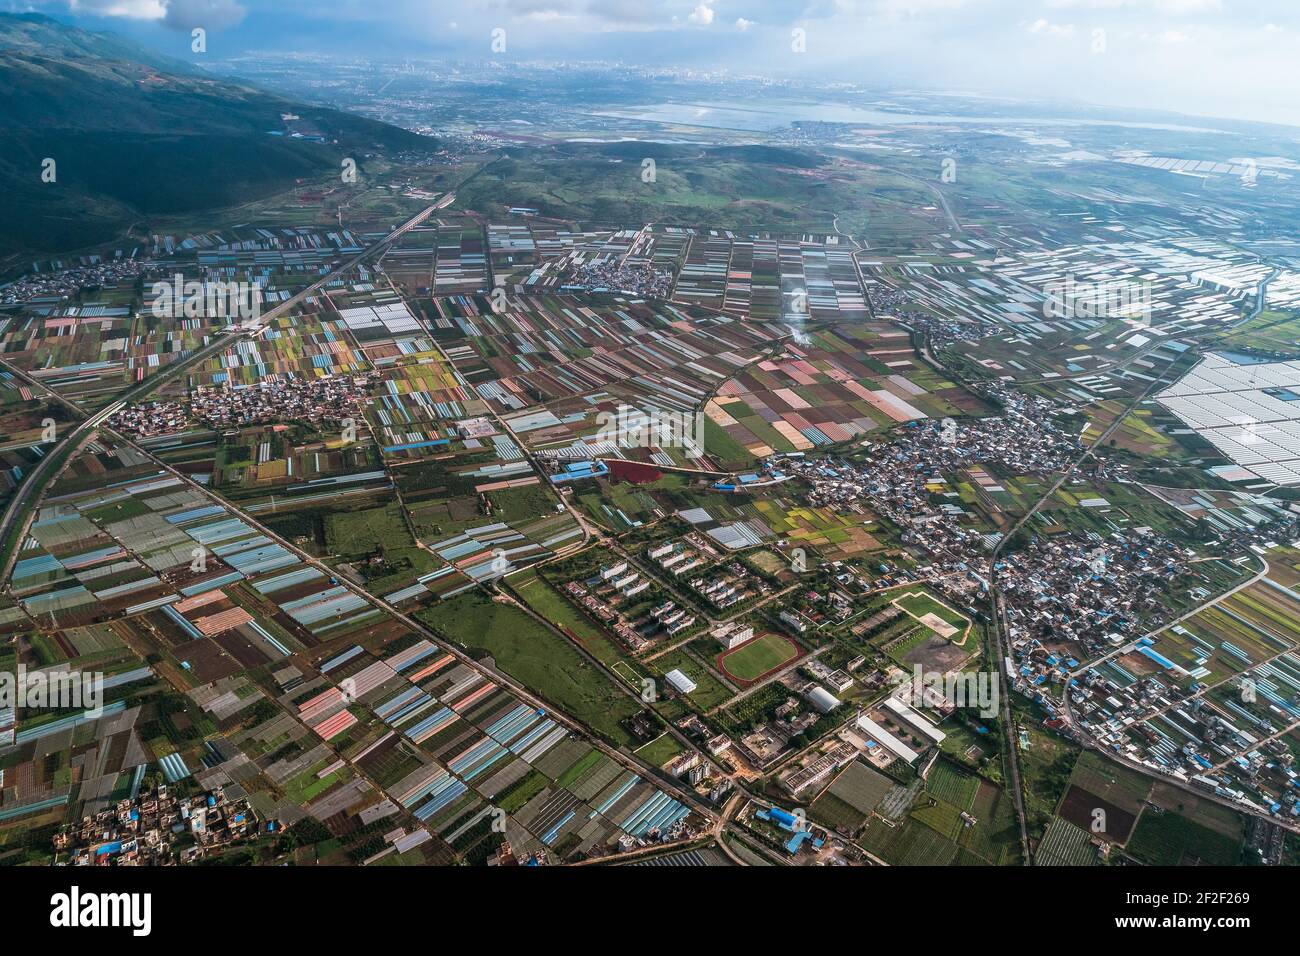 vue aérienne des parcelles agricoles de terre en culture dans une ville agricole. Mengzi, province du Yunnan, Chine Banque D'Images